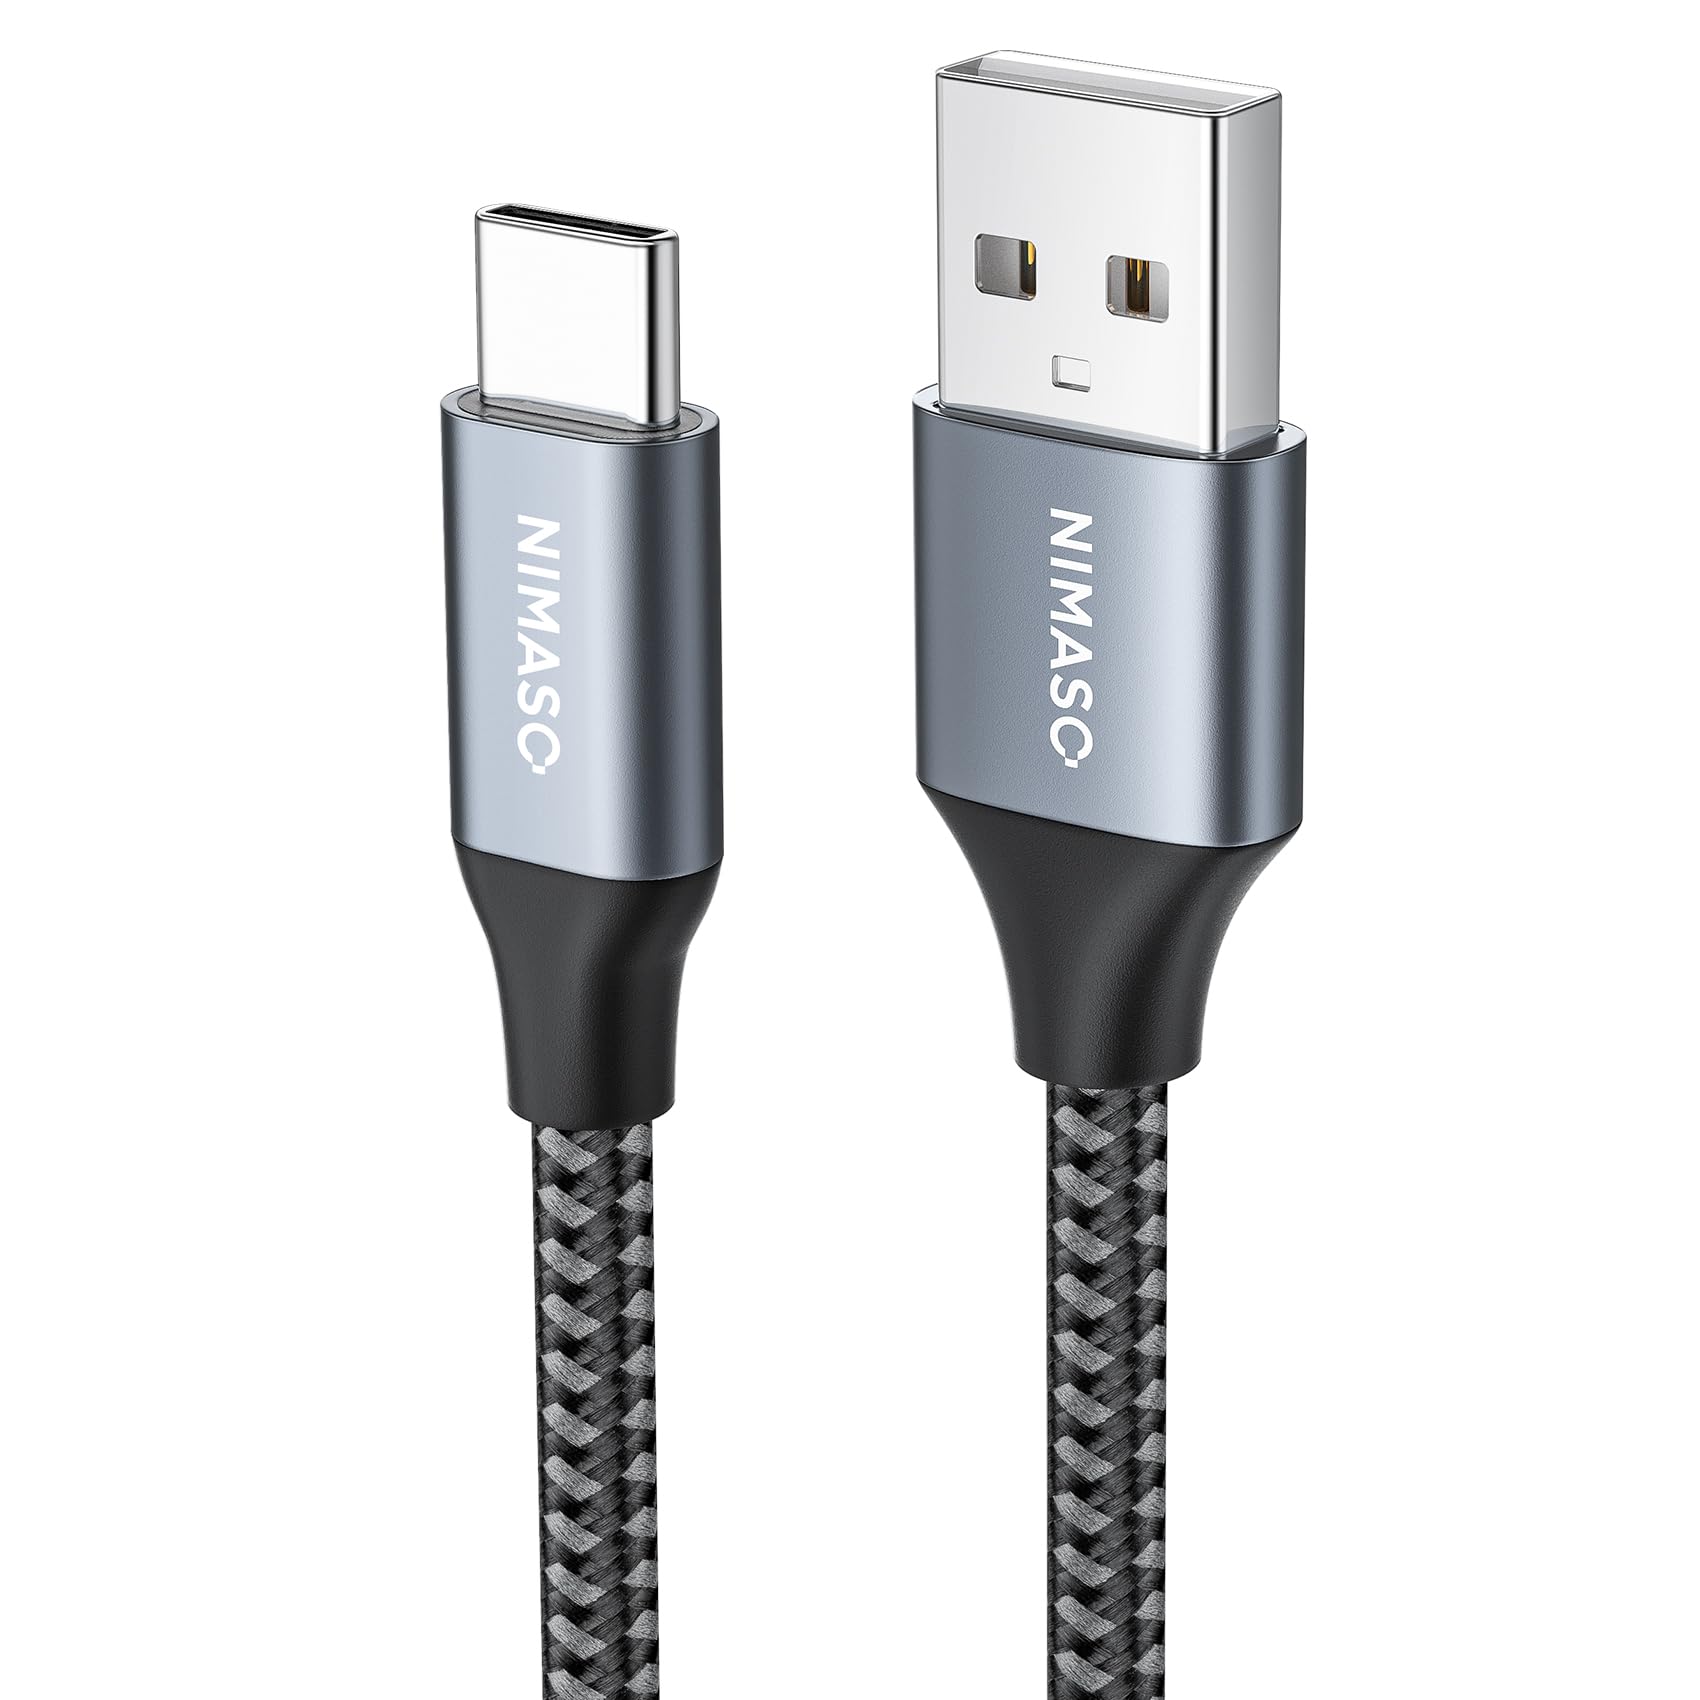 NIMASO USB Type C ケーブル 0.3mQC3.0対応 3A急速充電 タイプc 充電ケーブル iPad Pro、Sony、Galaxy、Huawei その他Android 等 USB-C 機器対応 NCA20L172